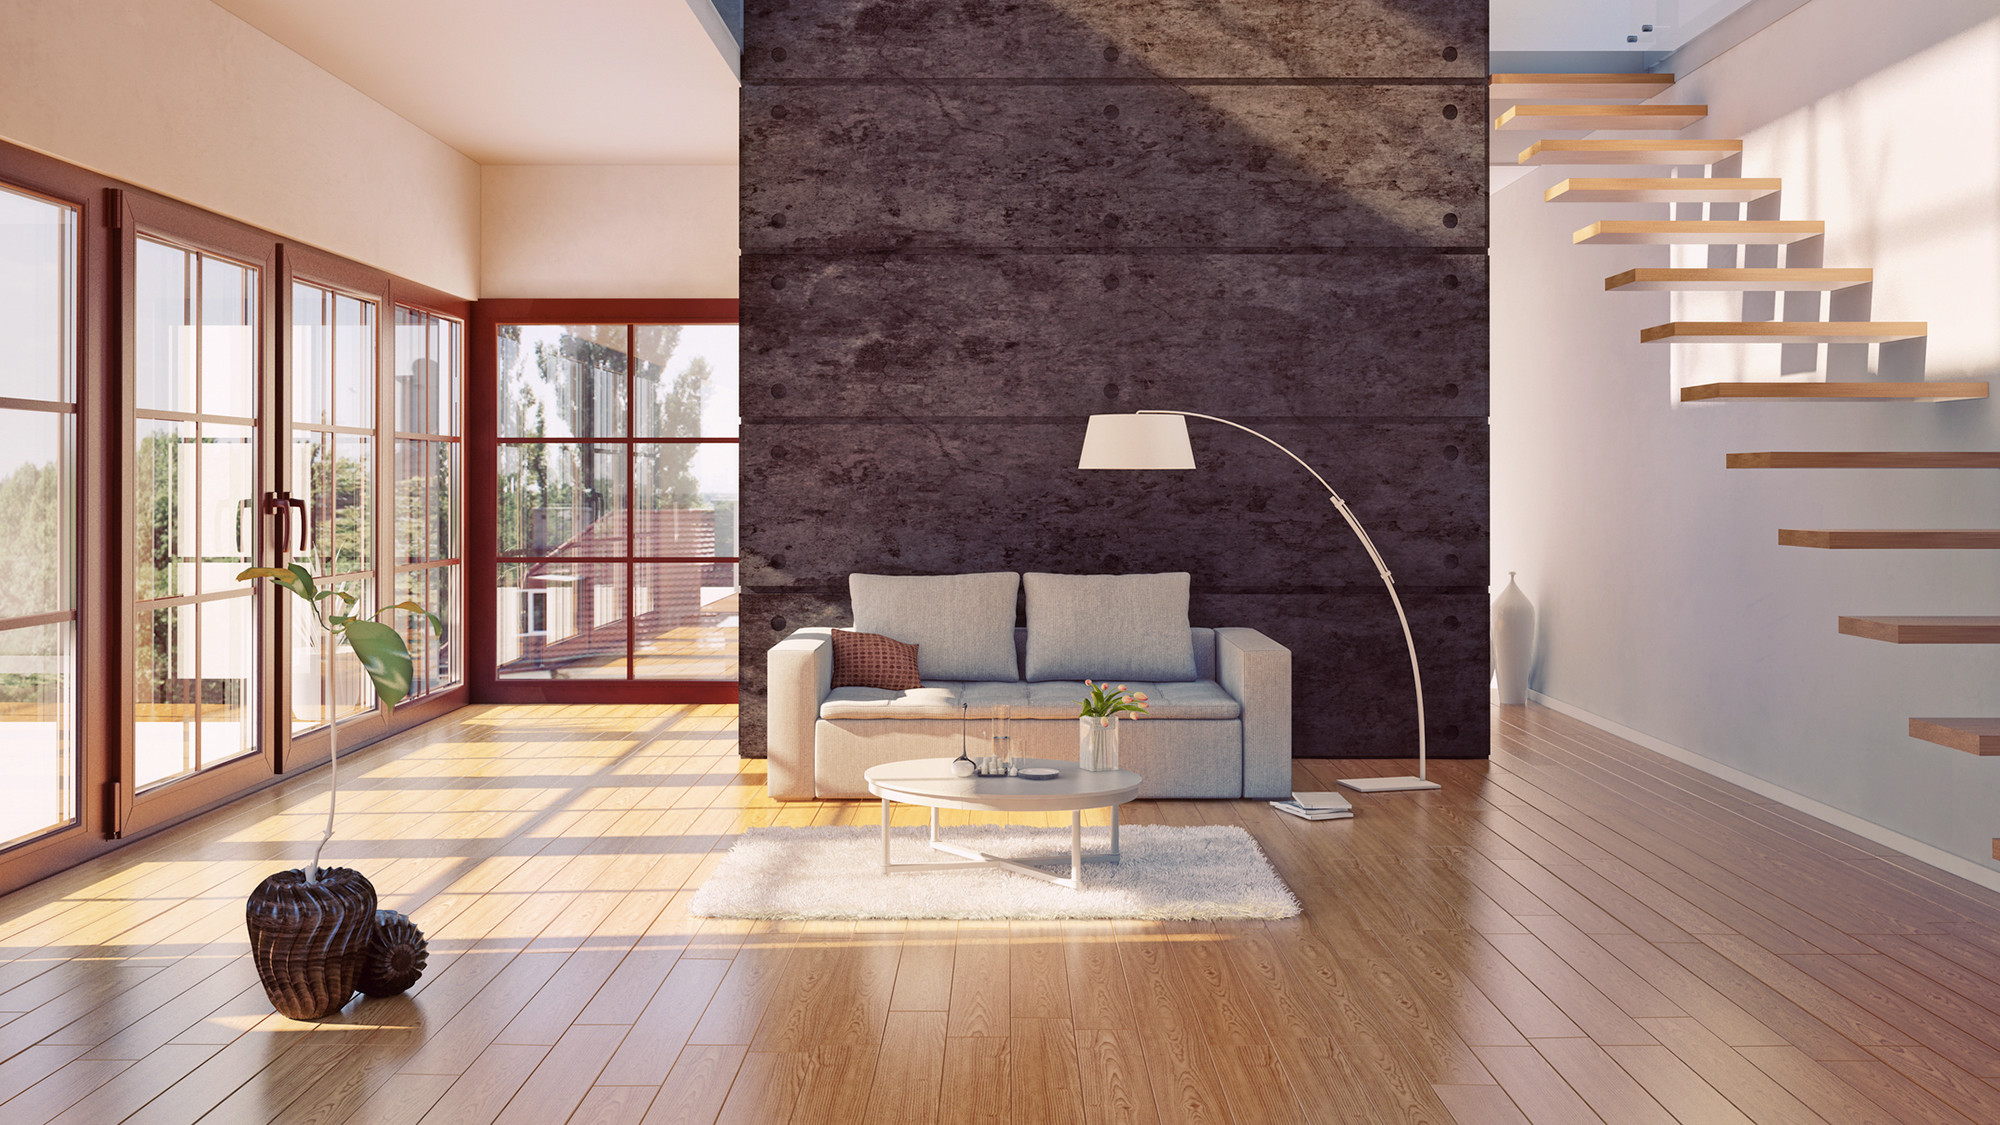 hardwood floor pricing guide of do hardwood floors provide the best return on investment realtor coma regarding hardwood floors investment